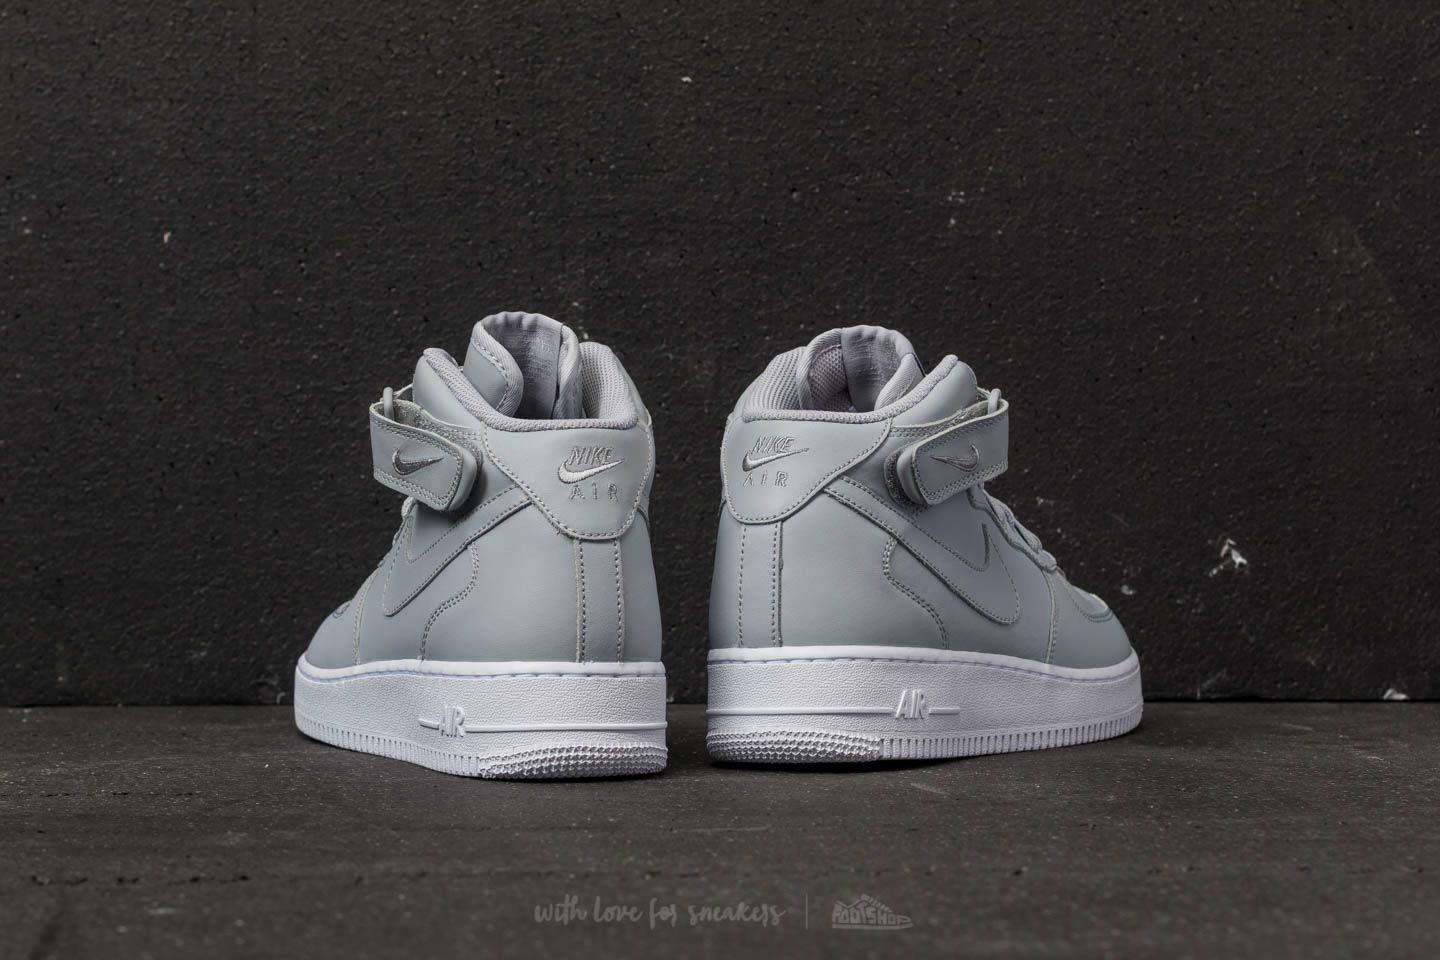 Grey 'Air Force 1 Mid '07' sneakers Nike - Vitkac TW